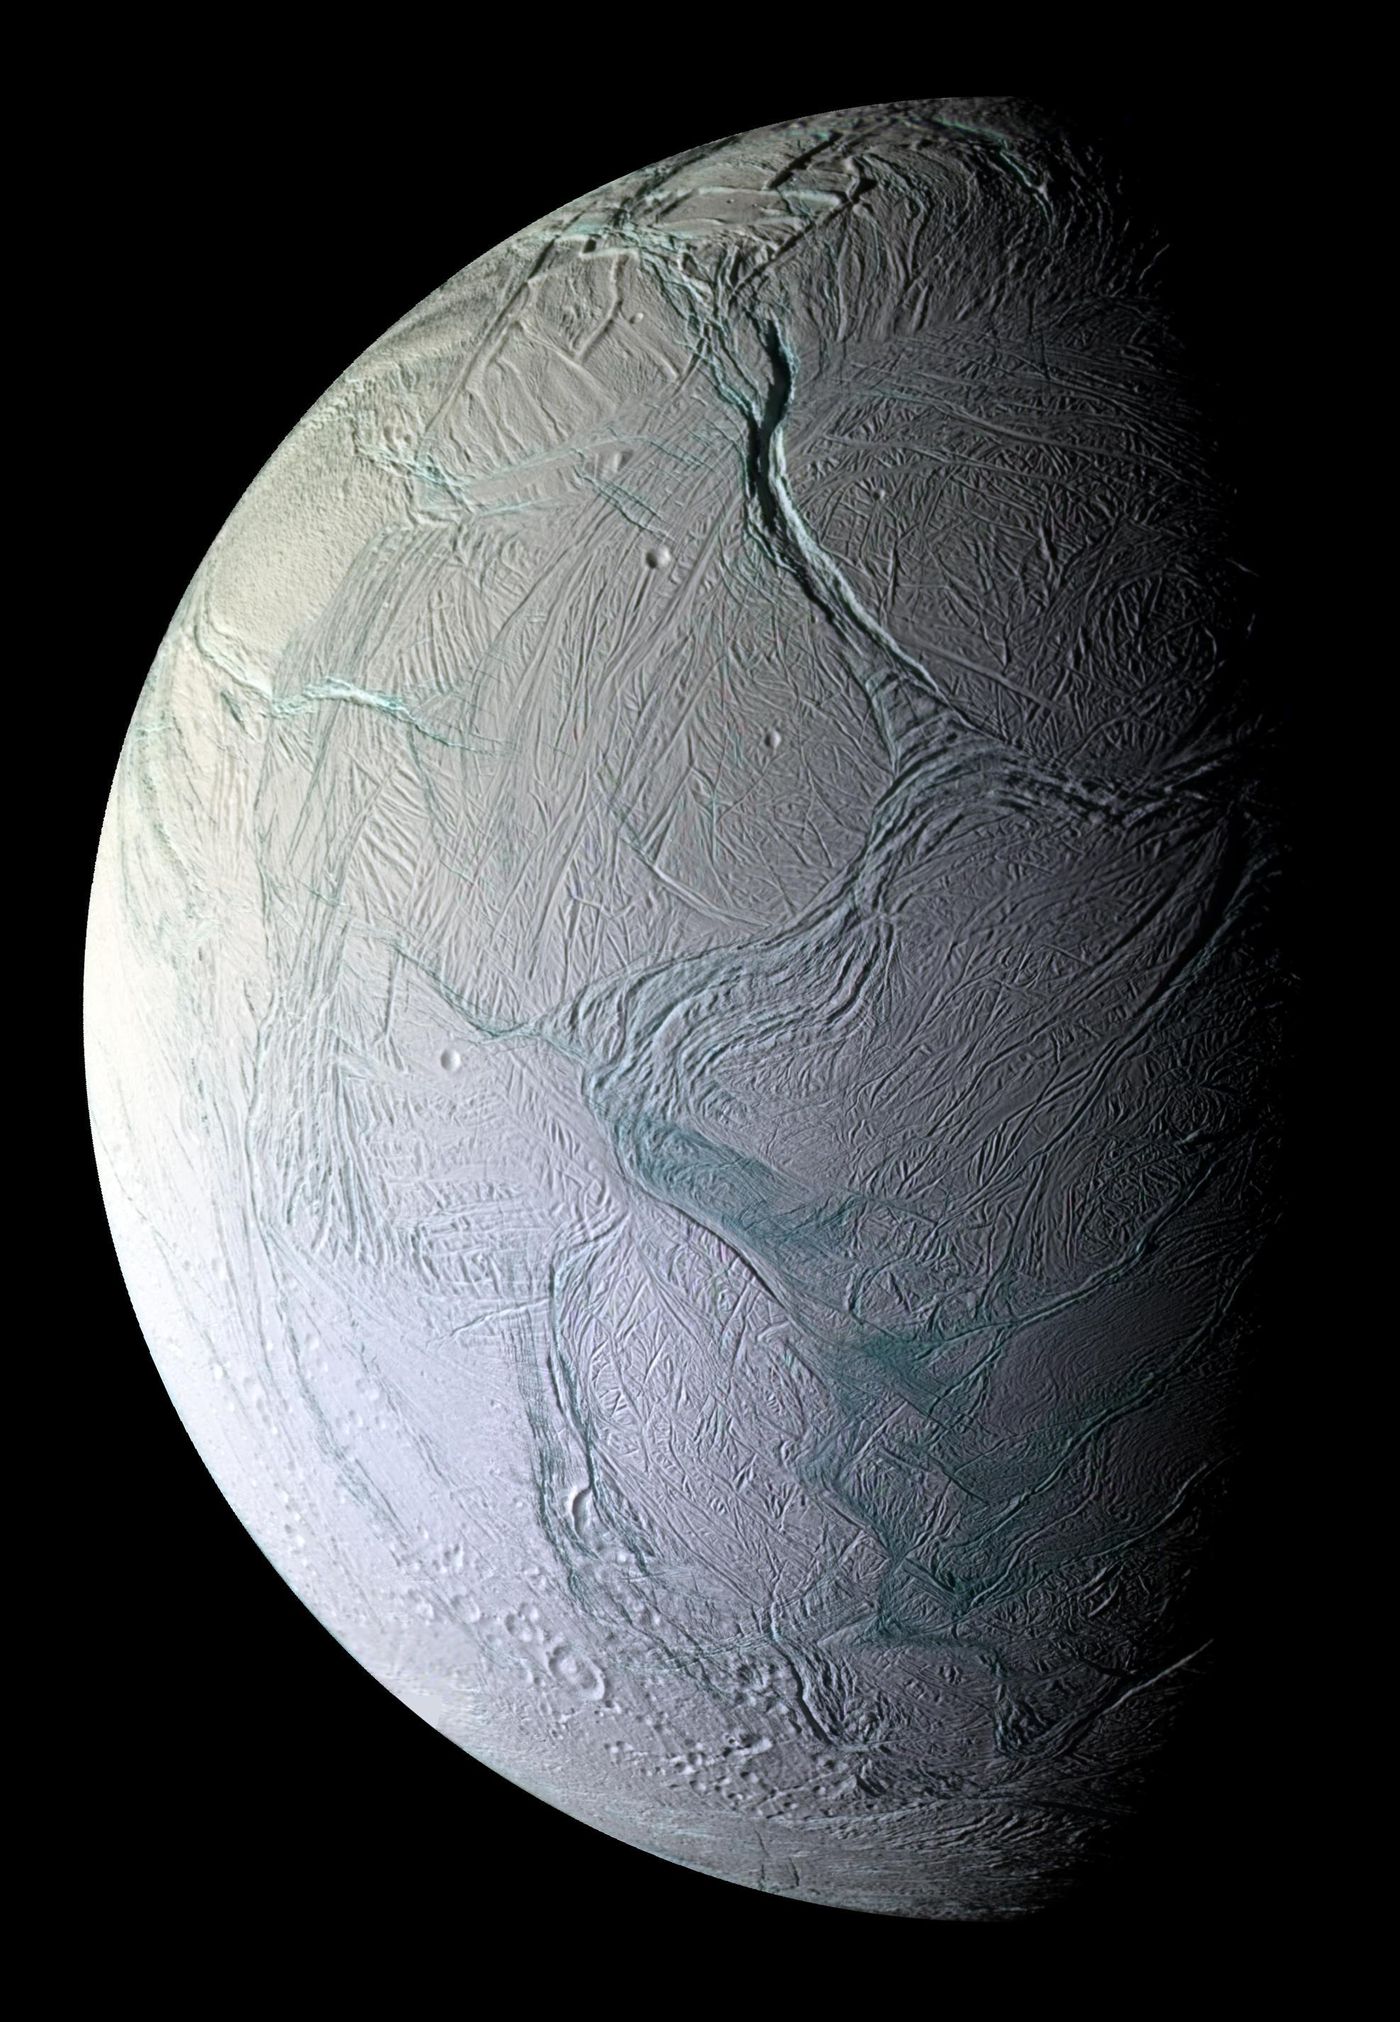 Saturn's Moon, Enceladus. (Credit: NASA/JPL/Space Science Institute)